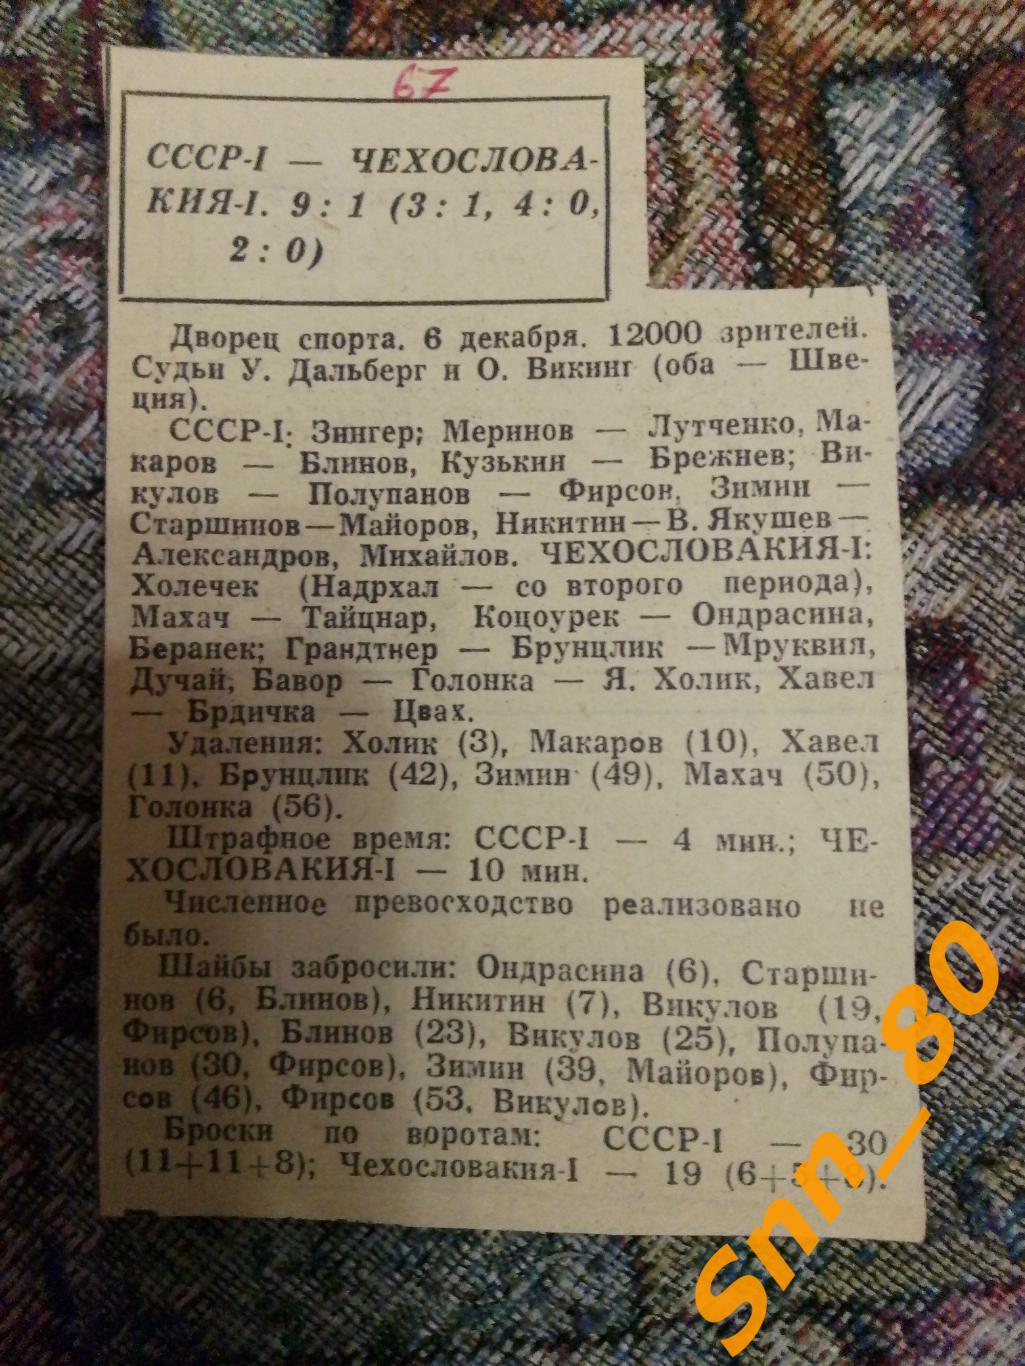 7 1967 Хоккей СССР-1 - Чехословакия-1 9-1